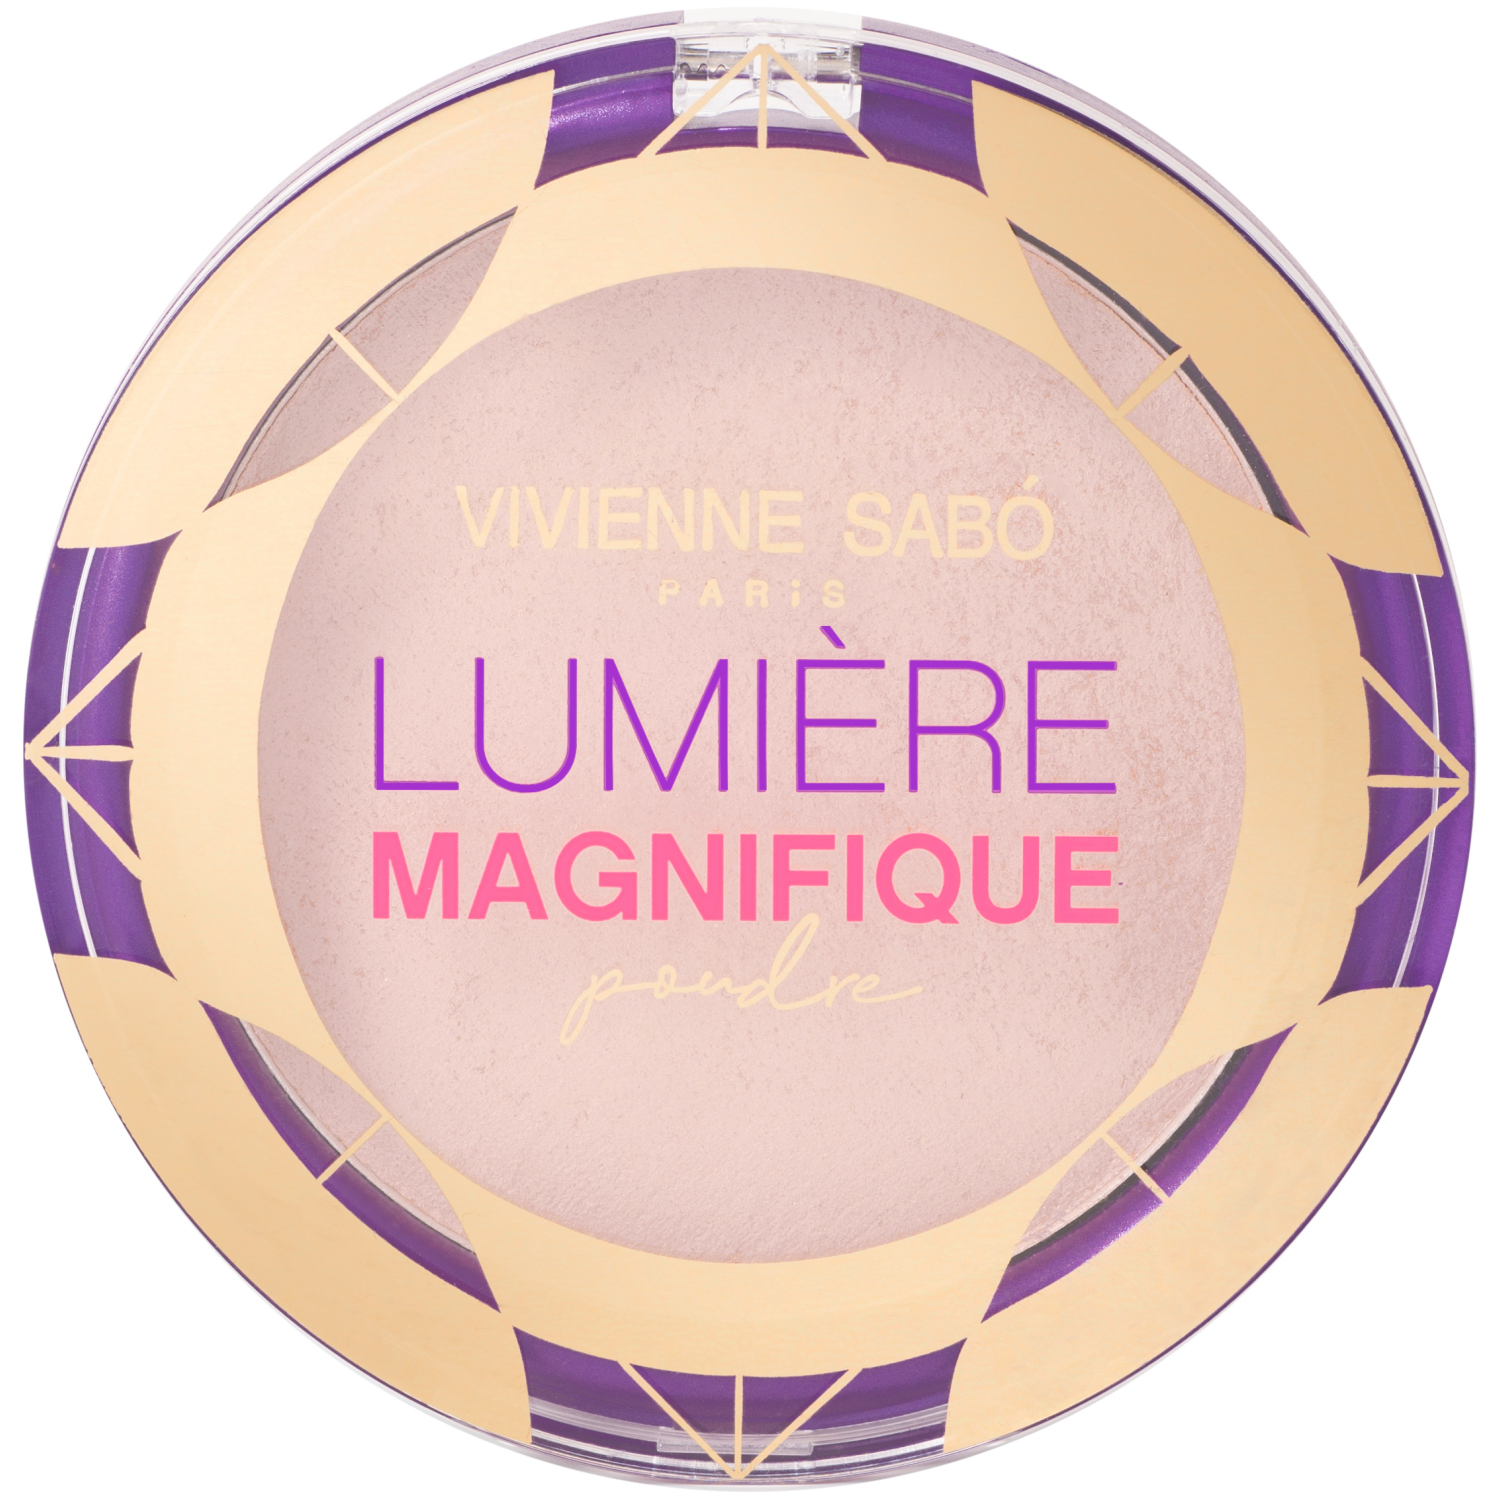 Пудра Vivienne Sabo Lumiere Magnifique, сияющая, бархатистая текстура, эффект мягкого фокуса, тон 02, бежевый, 6гр. relouis кисть косметическая для тональной основы синтетический ворс